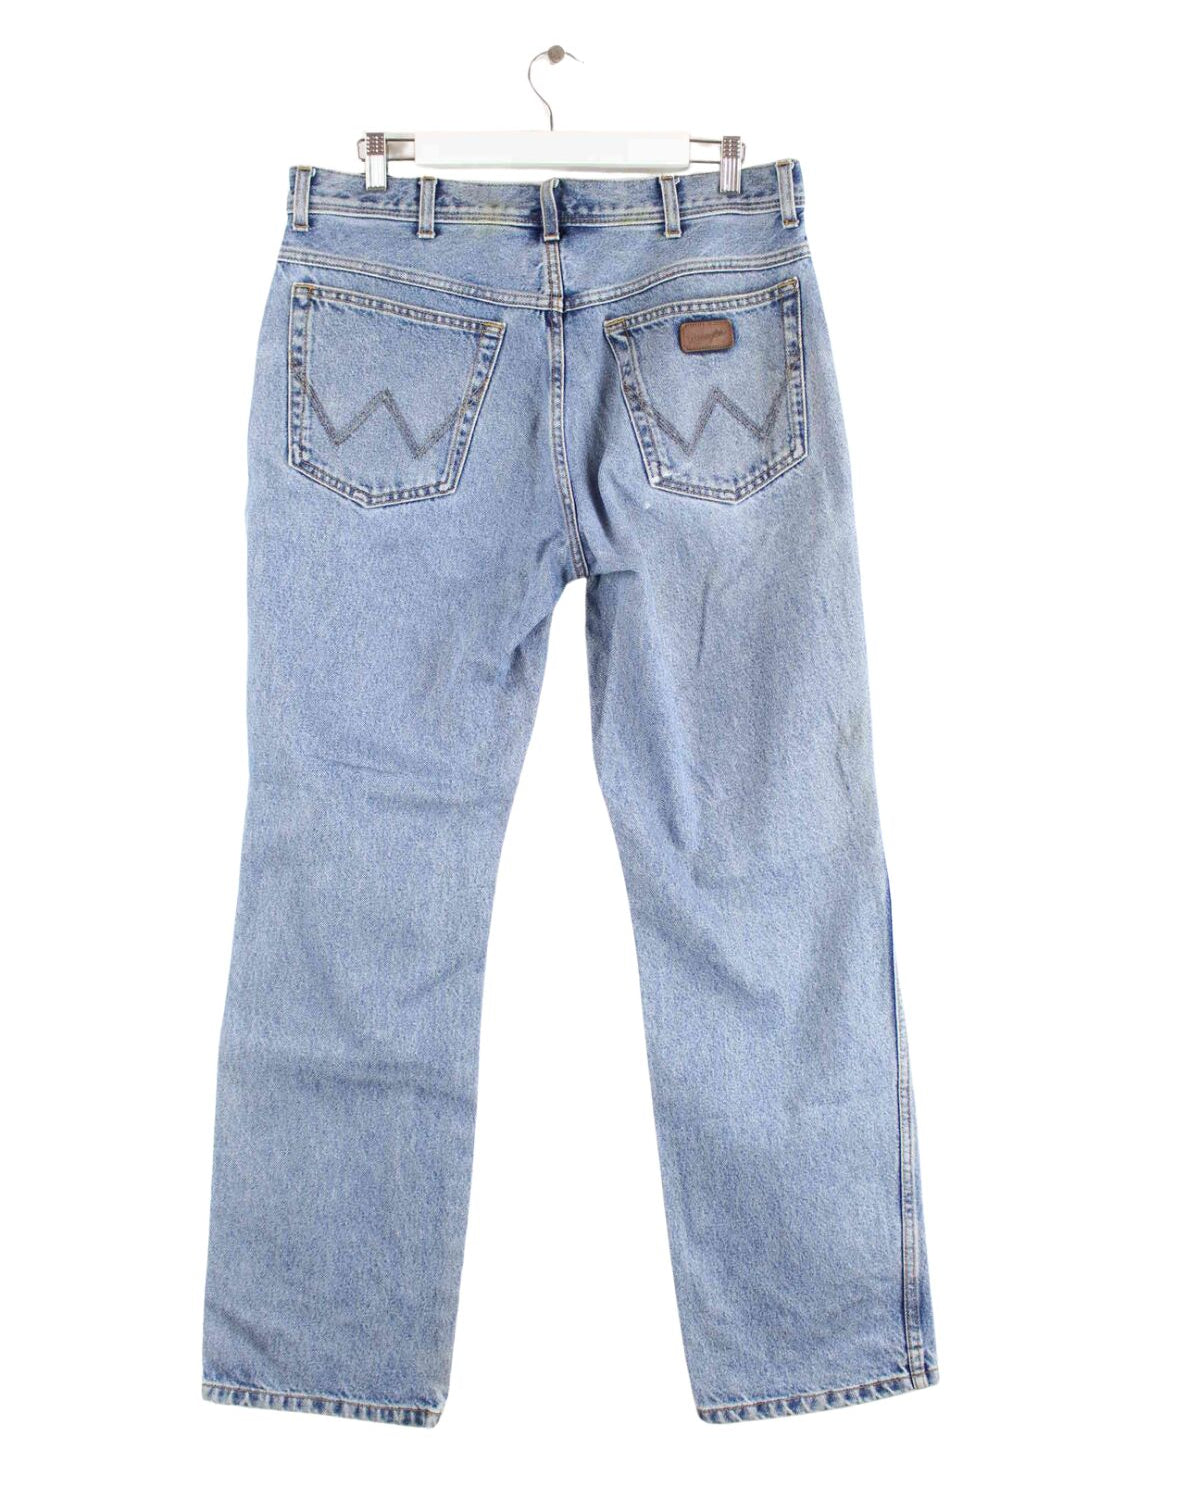 Wrangler Regular Fit Jeans Blau W36 L32 (back image)